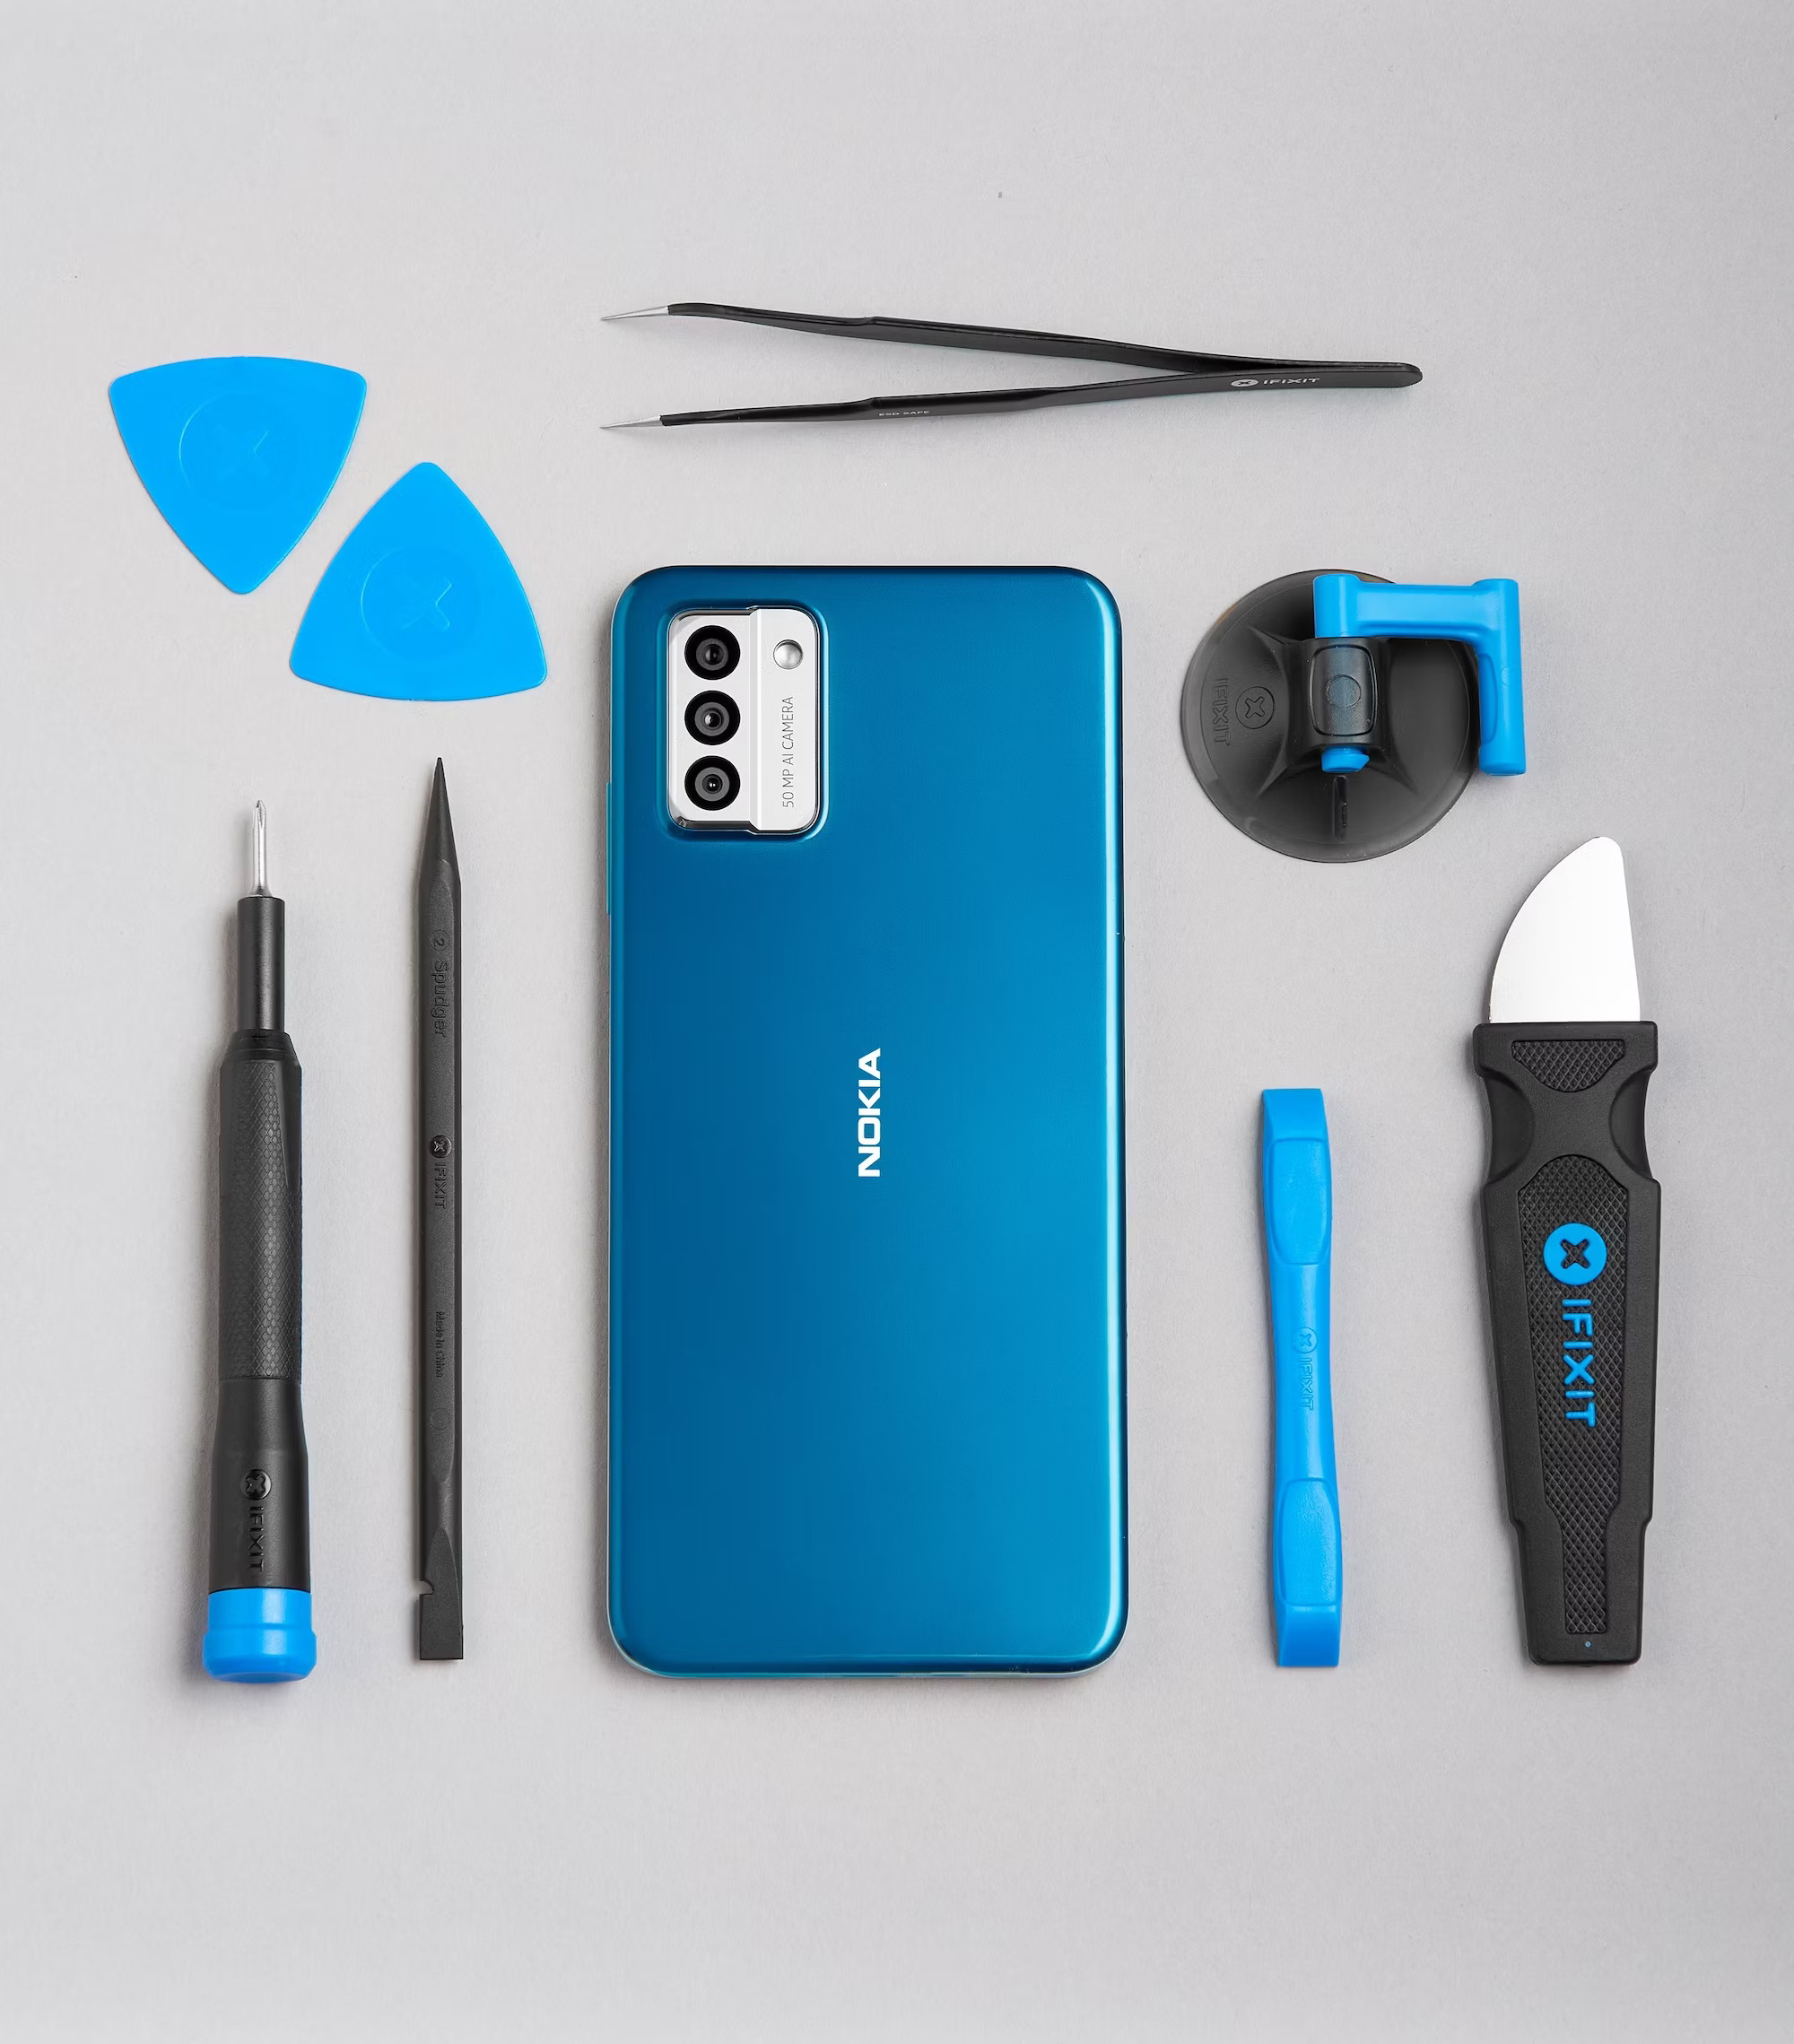 Nokia G22 có mặt sau bằng nhựa tái chế 100% dễ dàng tháo ra để hoán đổi các bộ phận bị hỏng. Đồng thời, nó cũng được trang bị các công cụ và hướng dẫn sửa chữa từ iFixit, người dùng có thể thay thế nắp lưng, pin, màn hình và cổng sạc của điện thoại. Ảnh: @AFP.